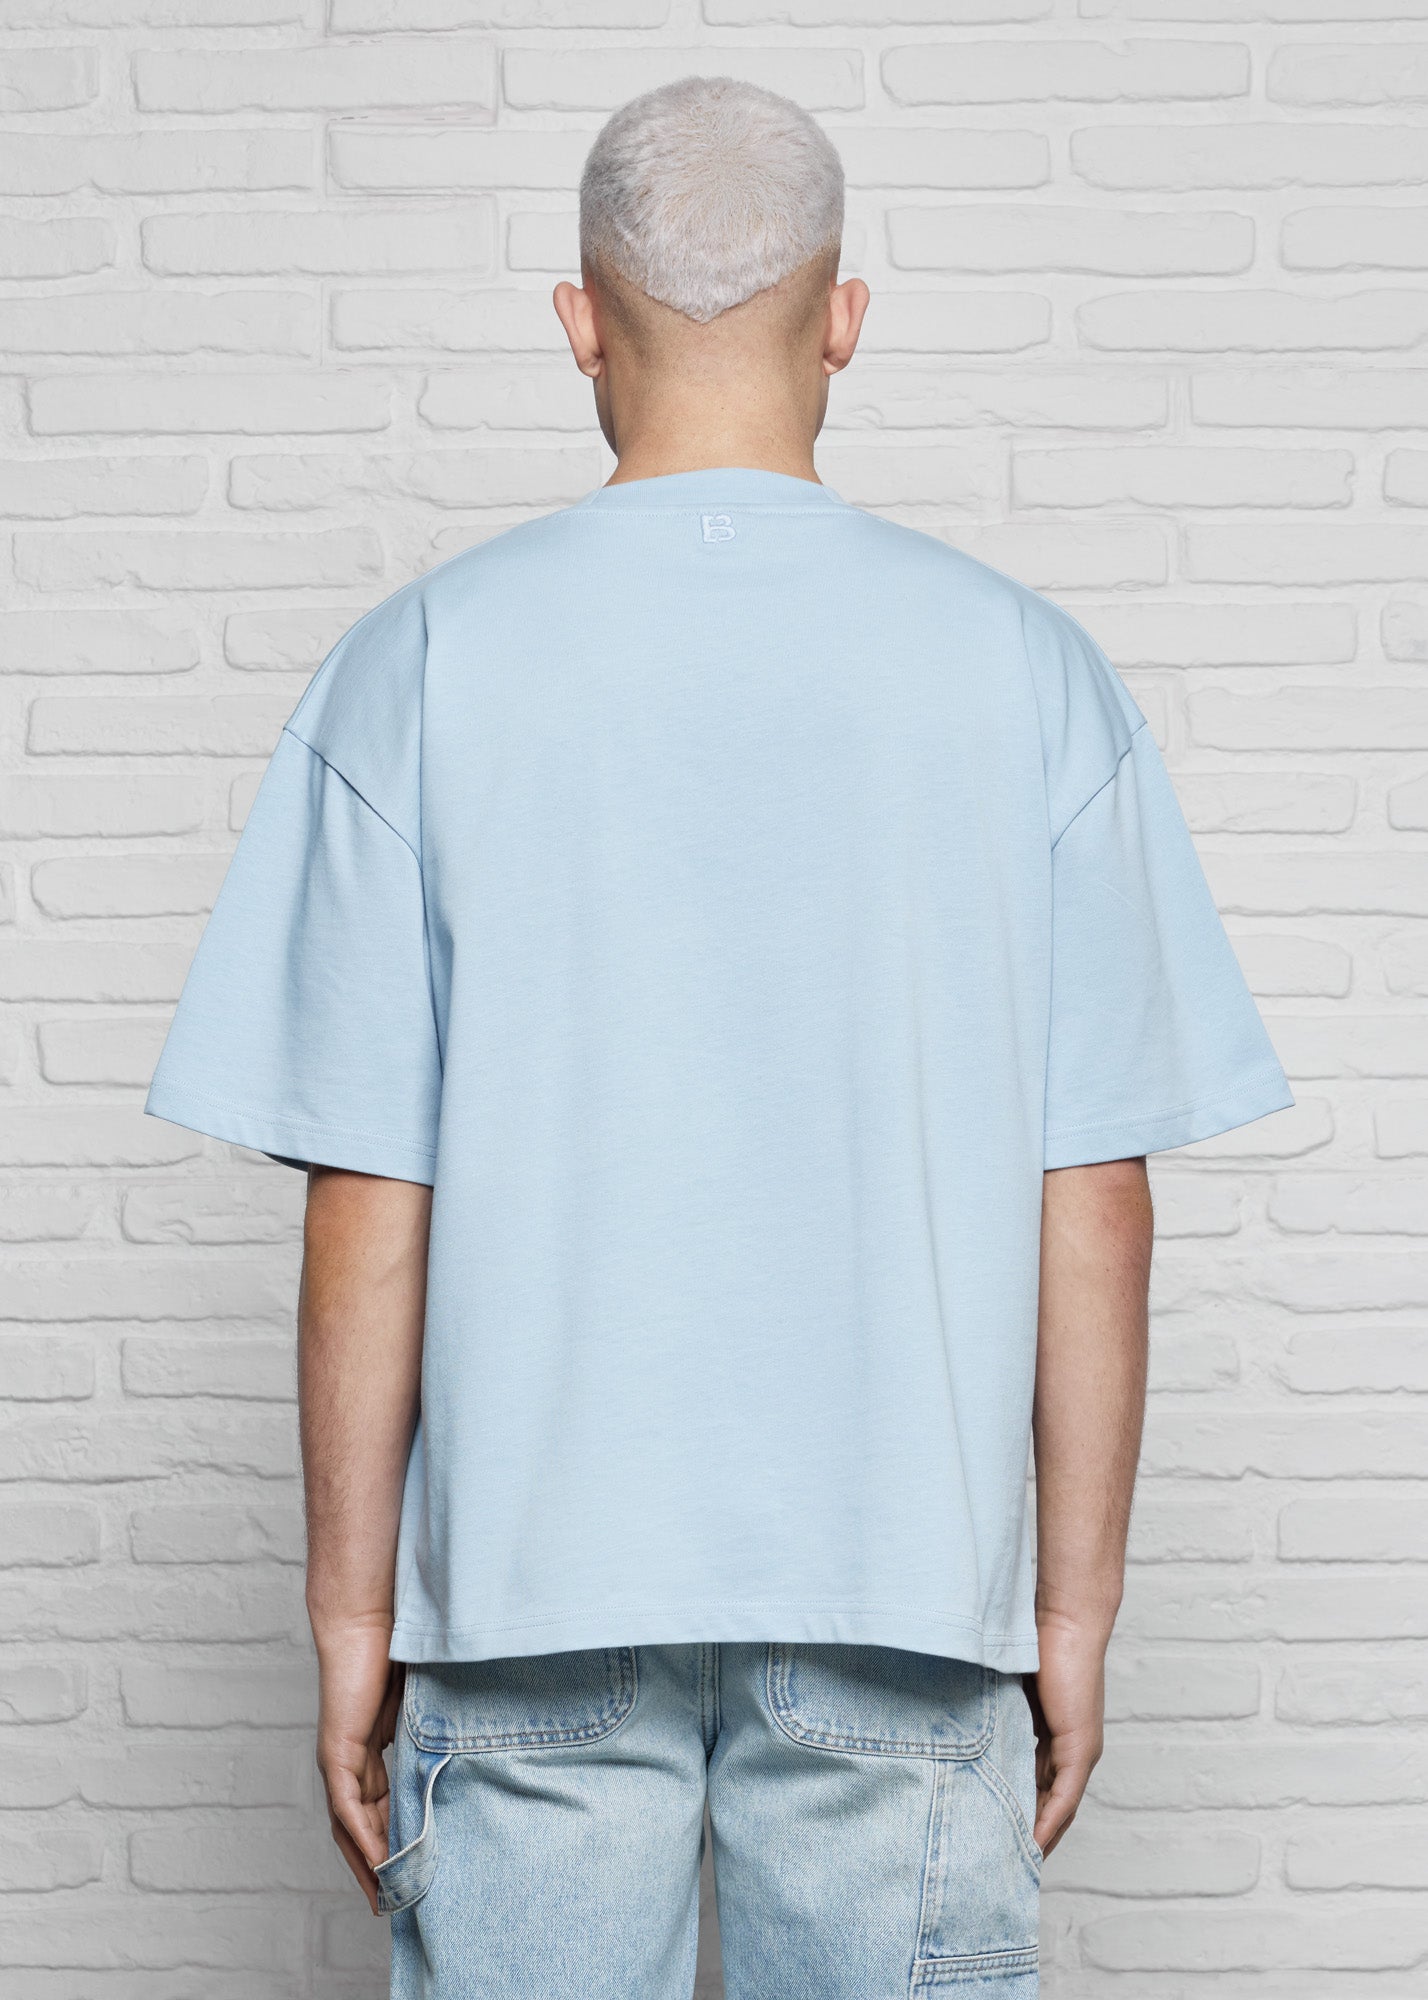 Baby blue basic oversized t-shirt